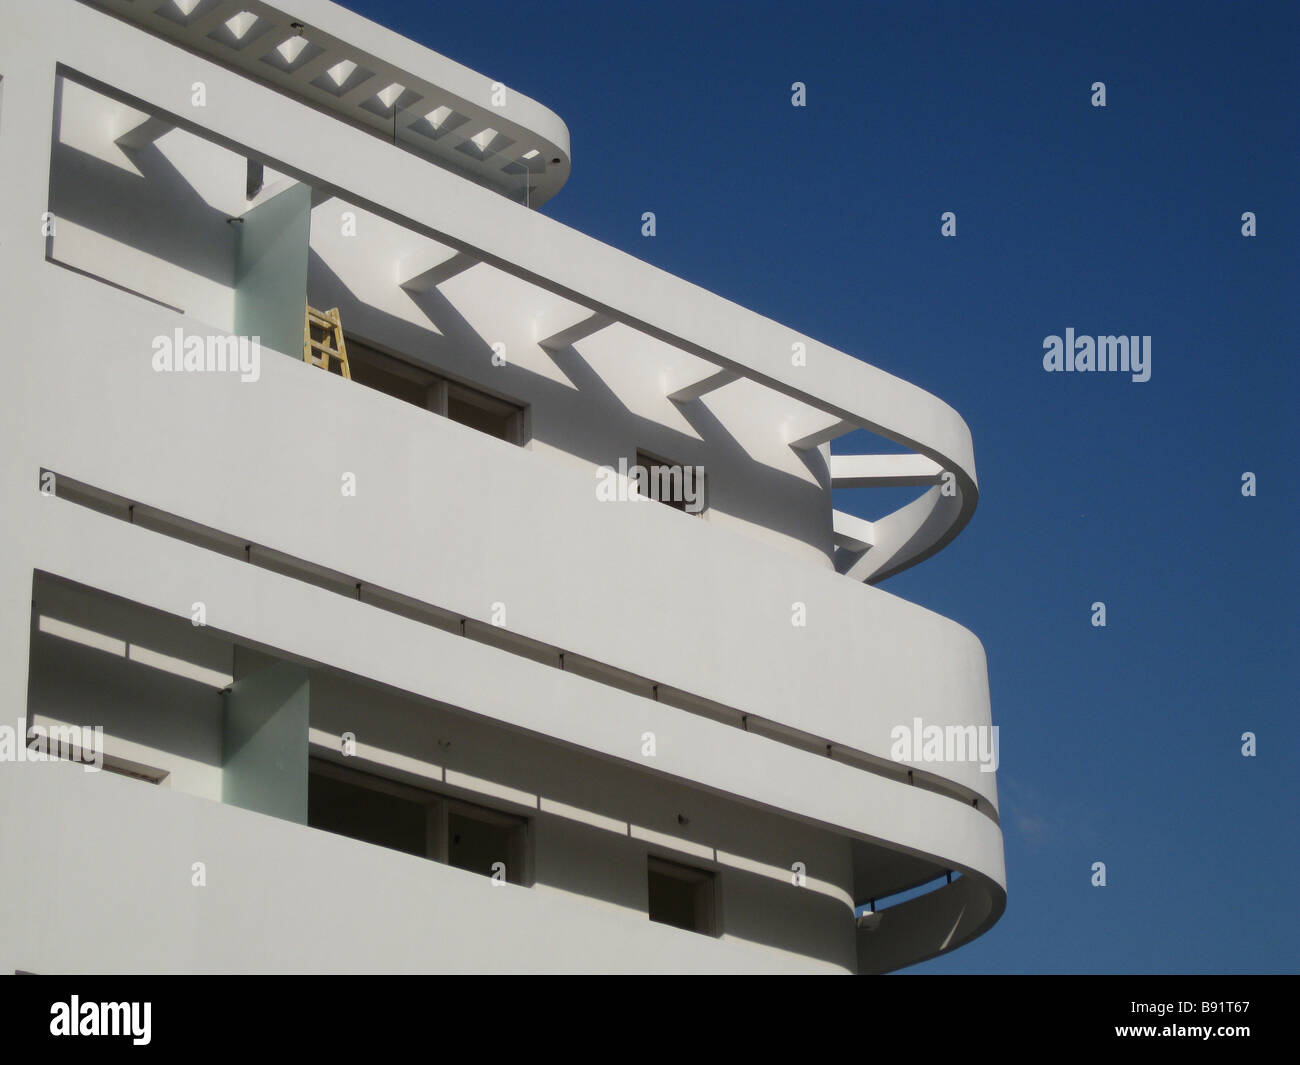 Rationaliser et balcon en saillie d'un béton incurvé de l'ombre d'un vieux bâtiment construit dans le style d'architecture Bauhaus dans les années 1930, à Tel Aviv, Israël Banque D'Images